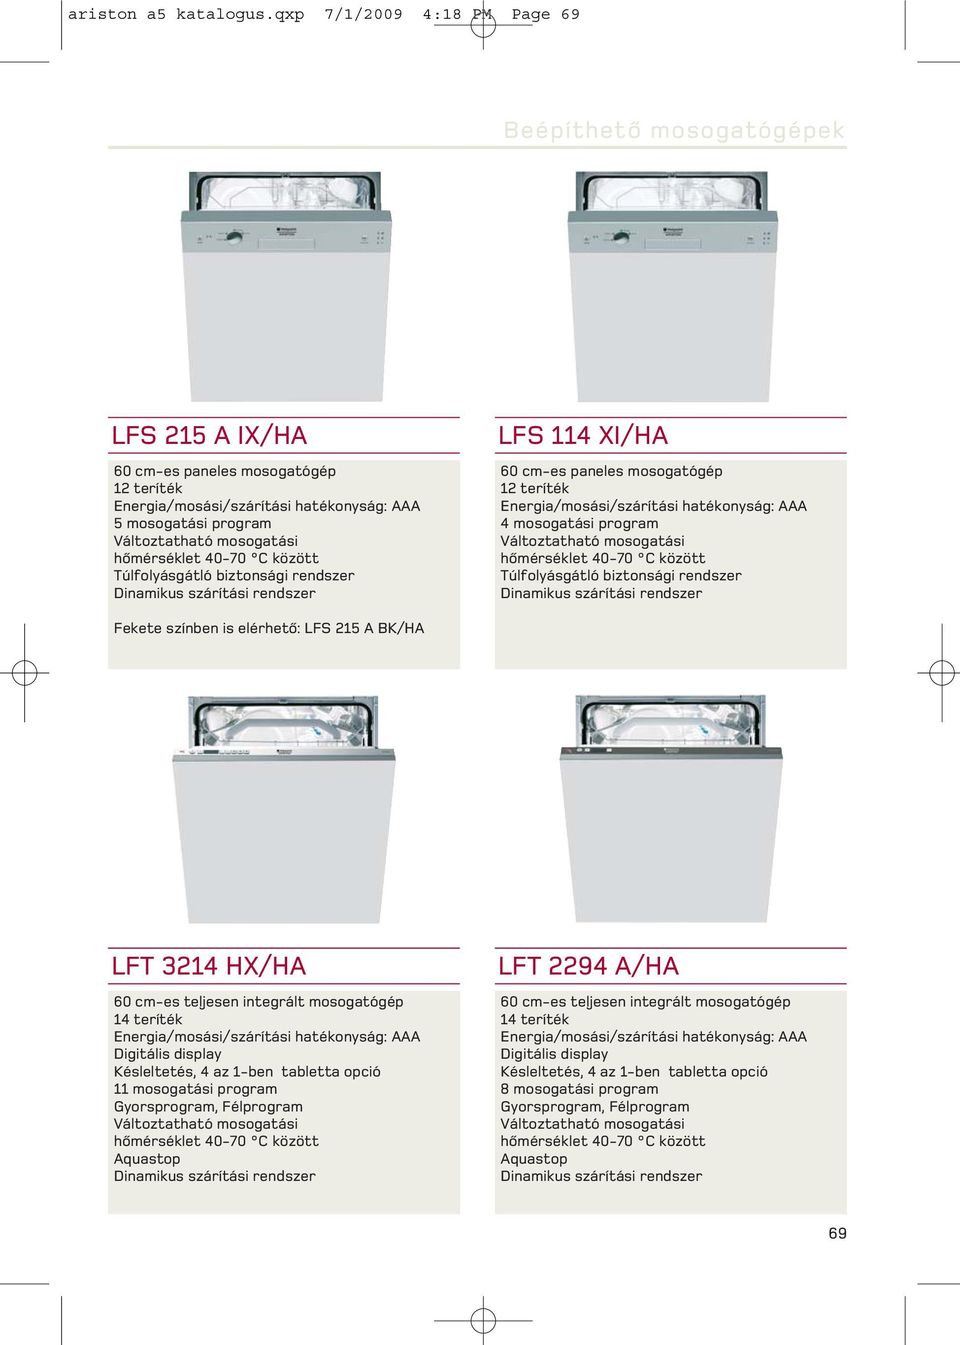 hõmérséklet 40-70 C között Túlfolyásgátló biztonsági rendszer Dinamikus szárítási rendszer LFS 114 I/HA 60 cm-es paneles mosogatógép 12 teríték Energia/mosási/szárítási hatékonyság: AAA 4 mosogatási